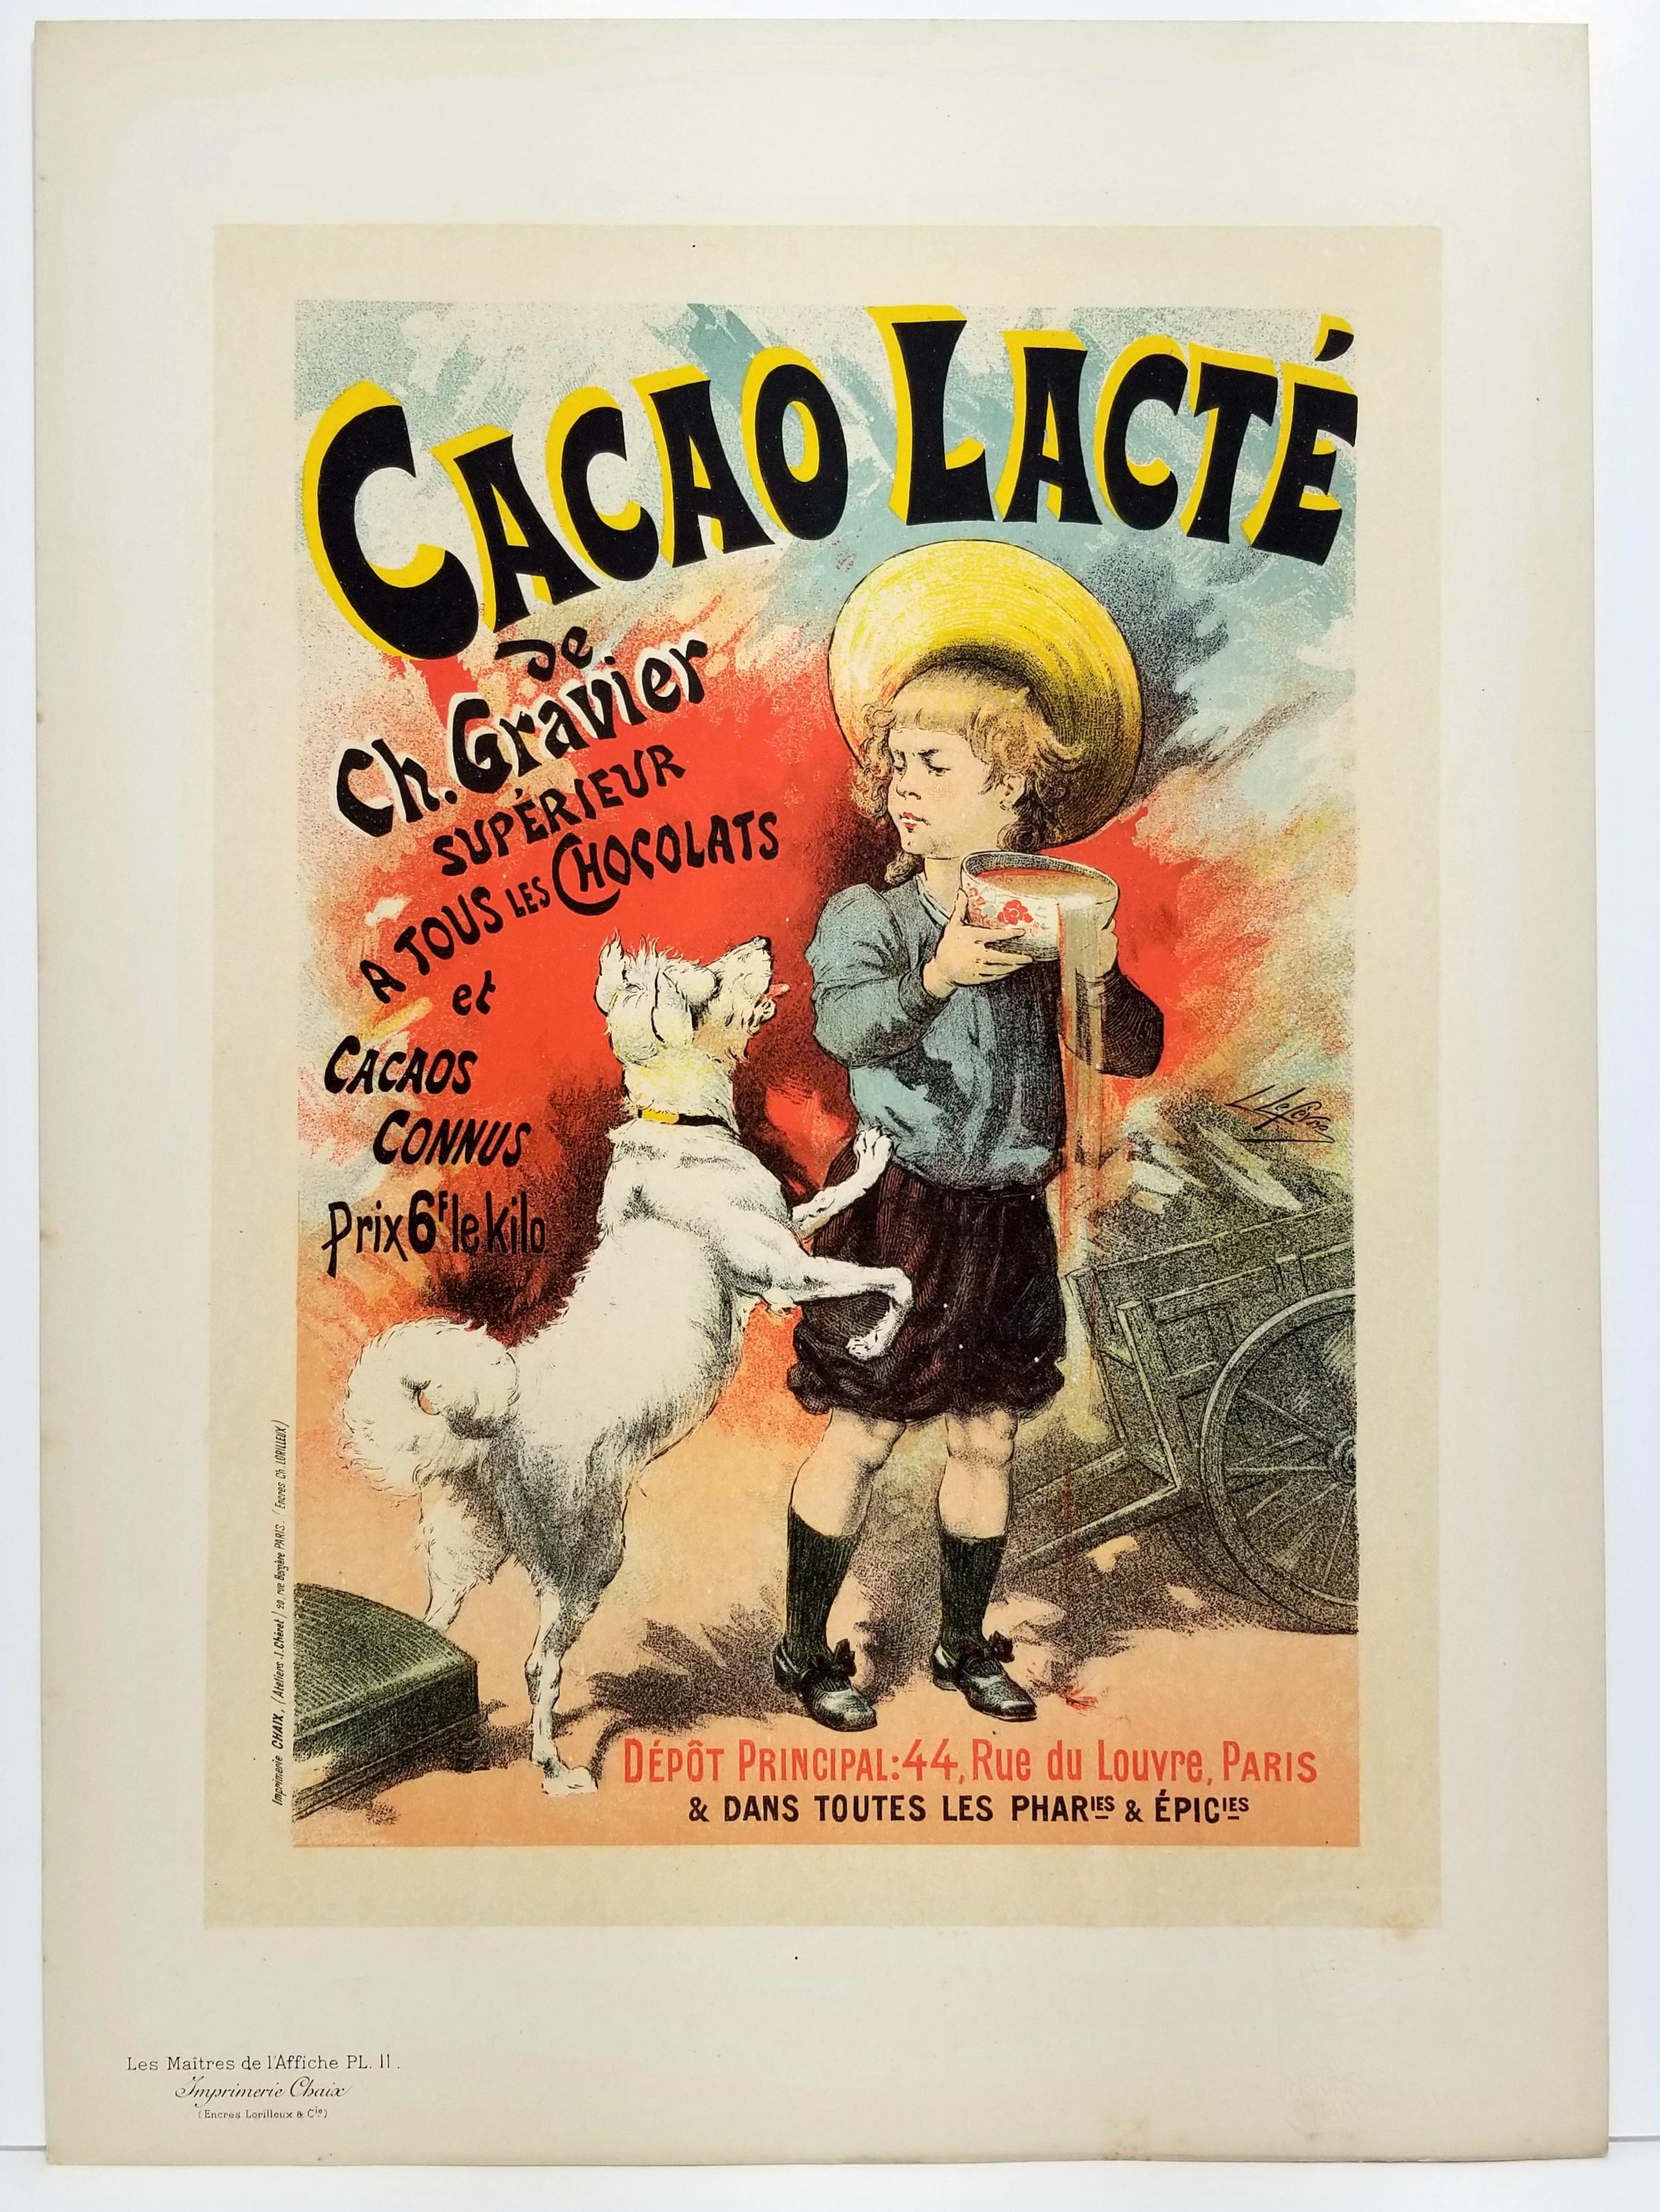 Cacao lacté, de Ch. Gravier. - Print by Lucien Lefevre